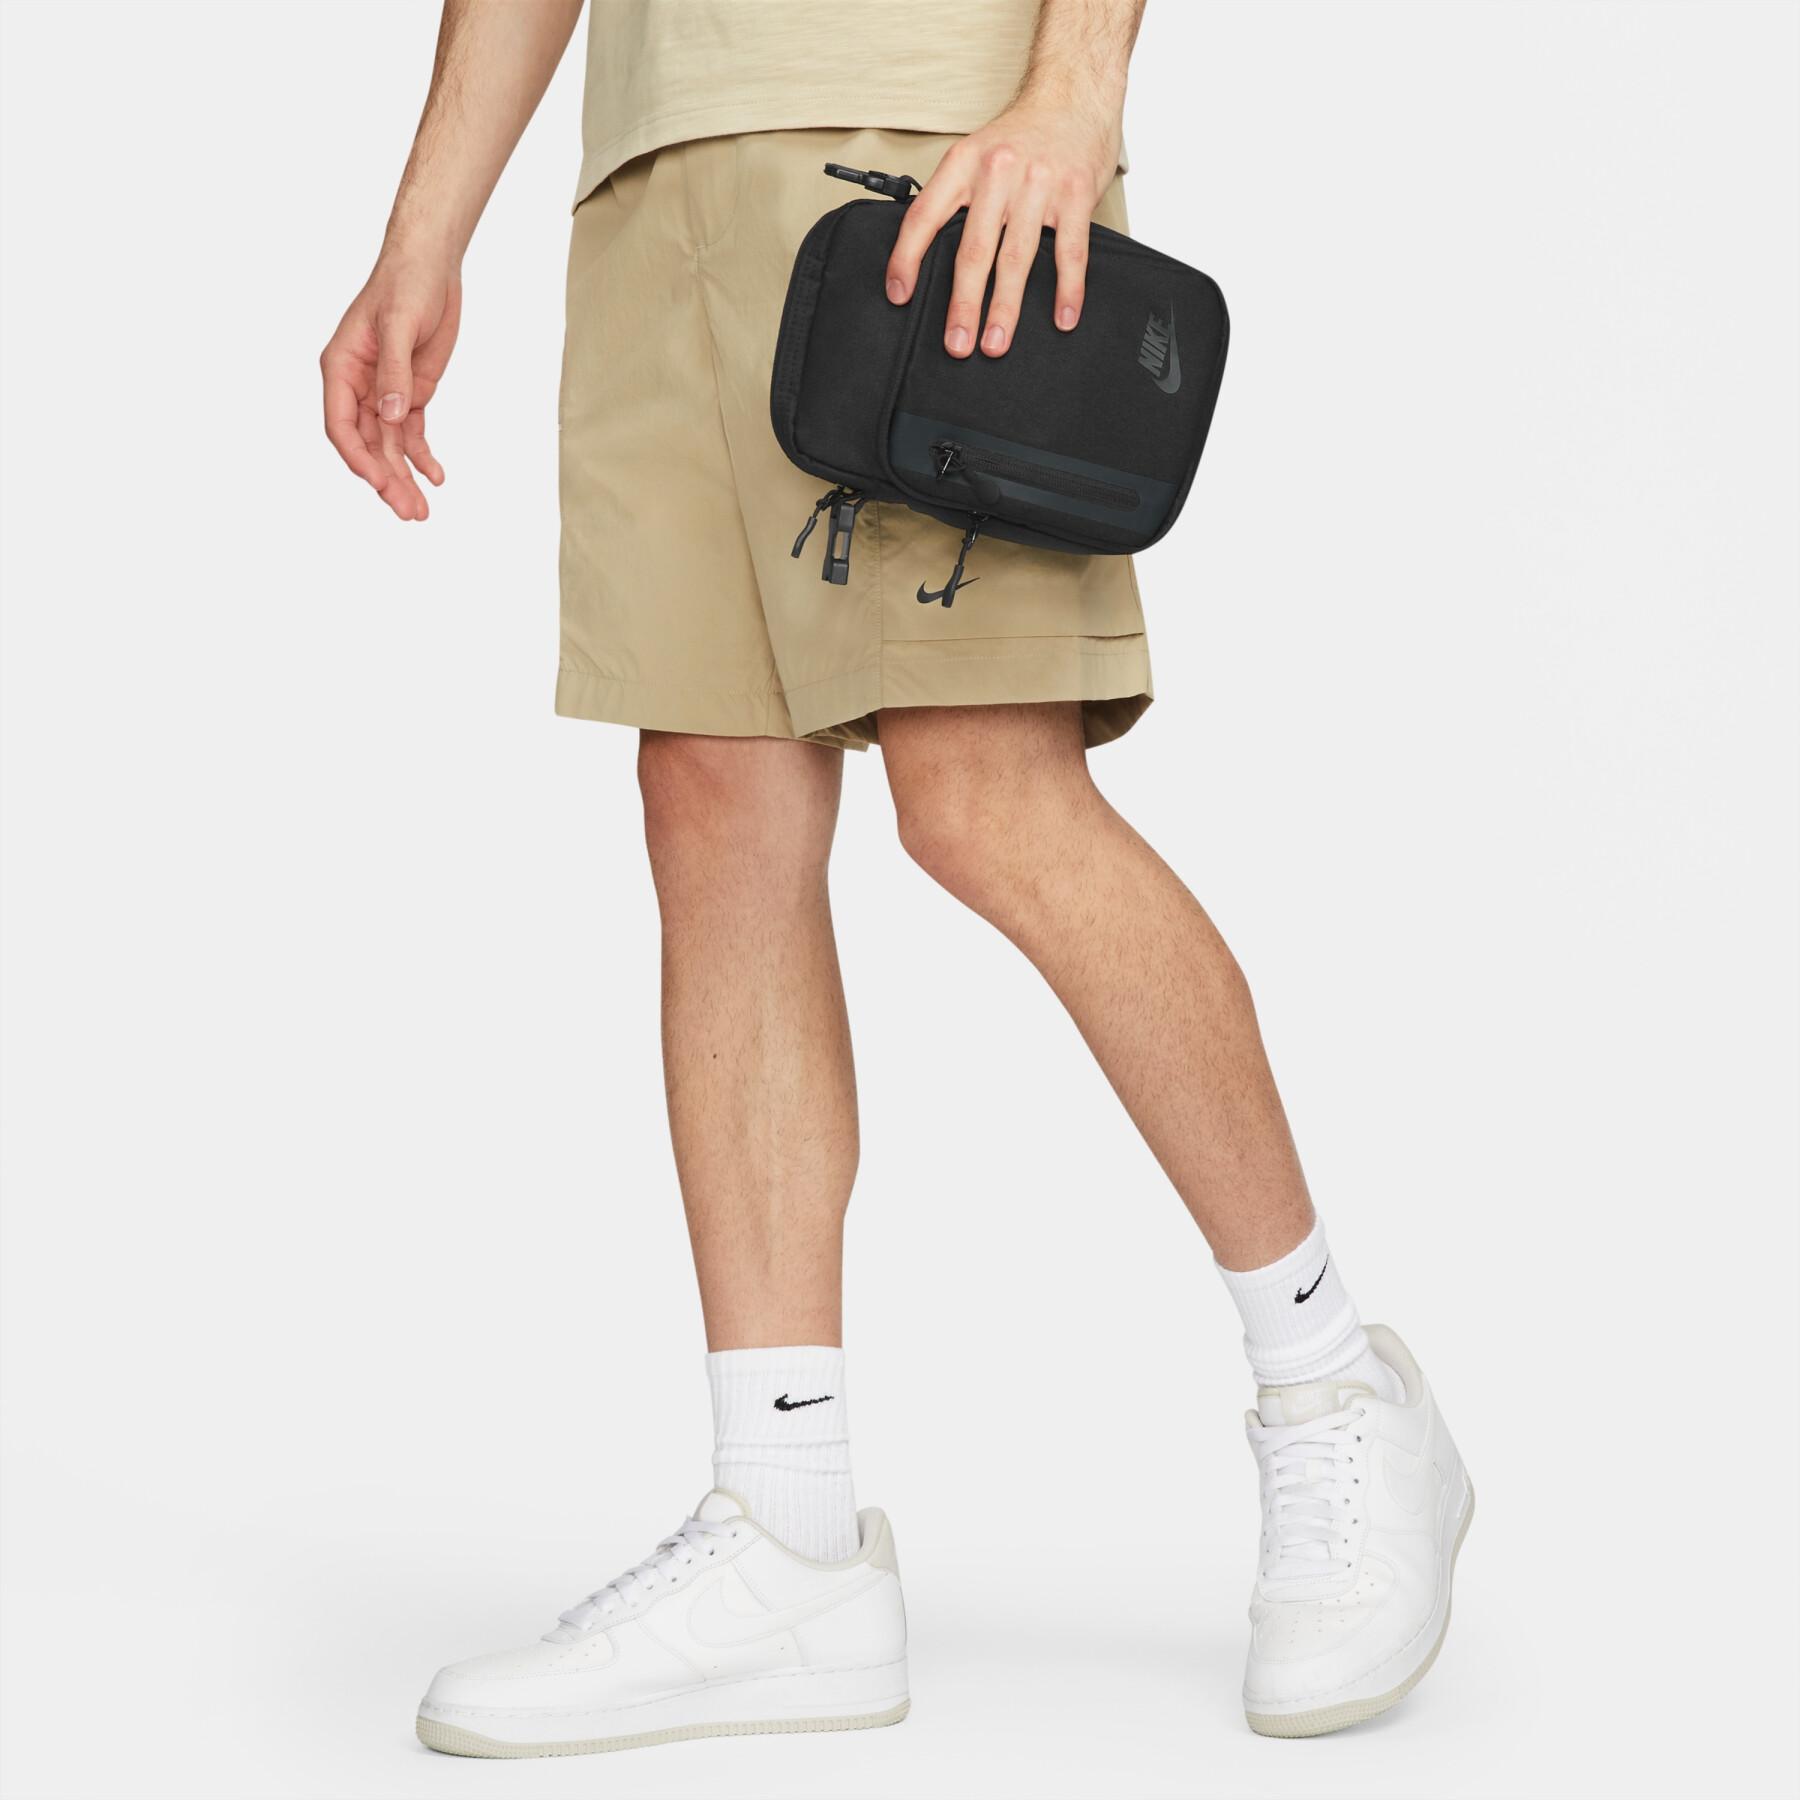 Bag Nike Elemental Premium